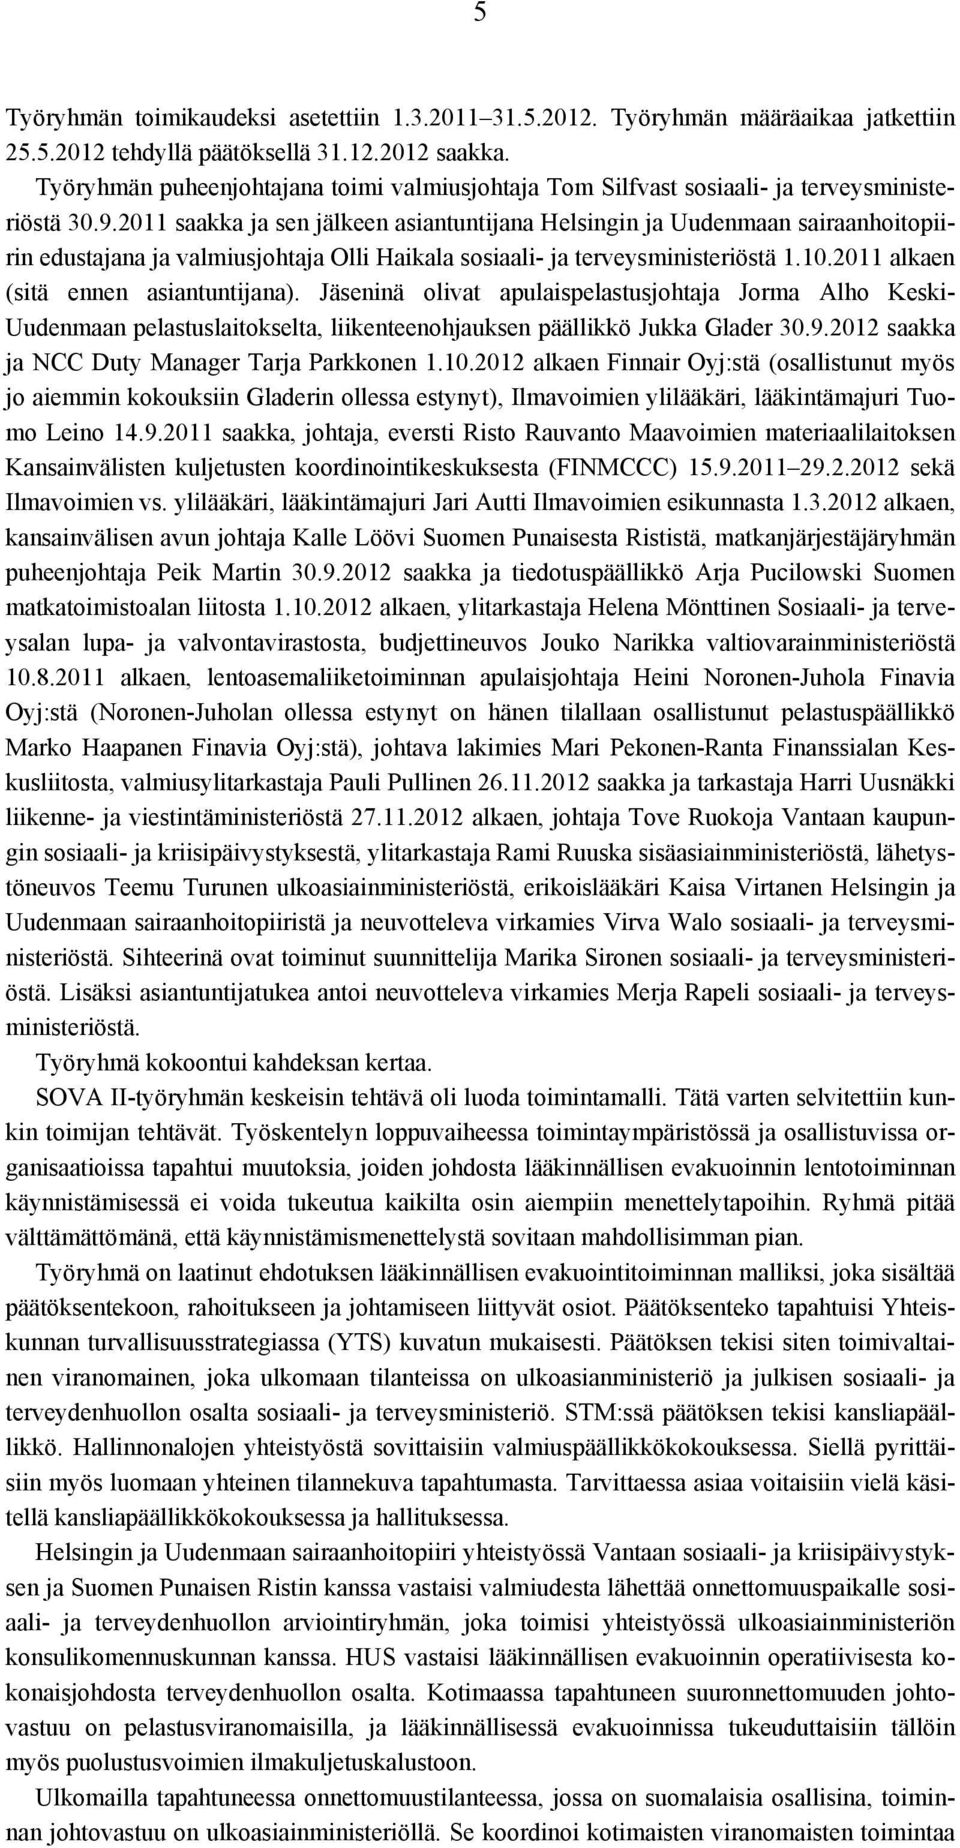 2011 saakka ja sen jälkeen asiantuntijana Helsingin ja Uudenmaan sairaanhoitopiirin edustajana ja valmiusjohtaja Olli Haikala sosiaali- ja terveysministeriöstä 1.10.